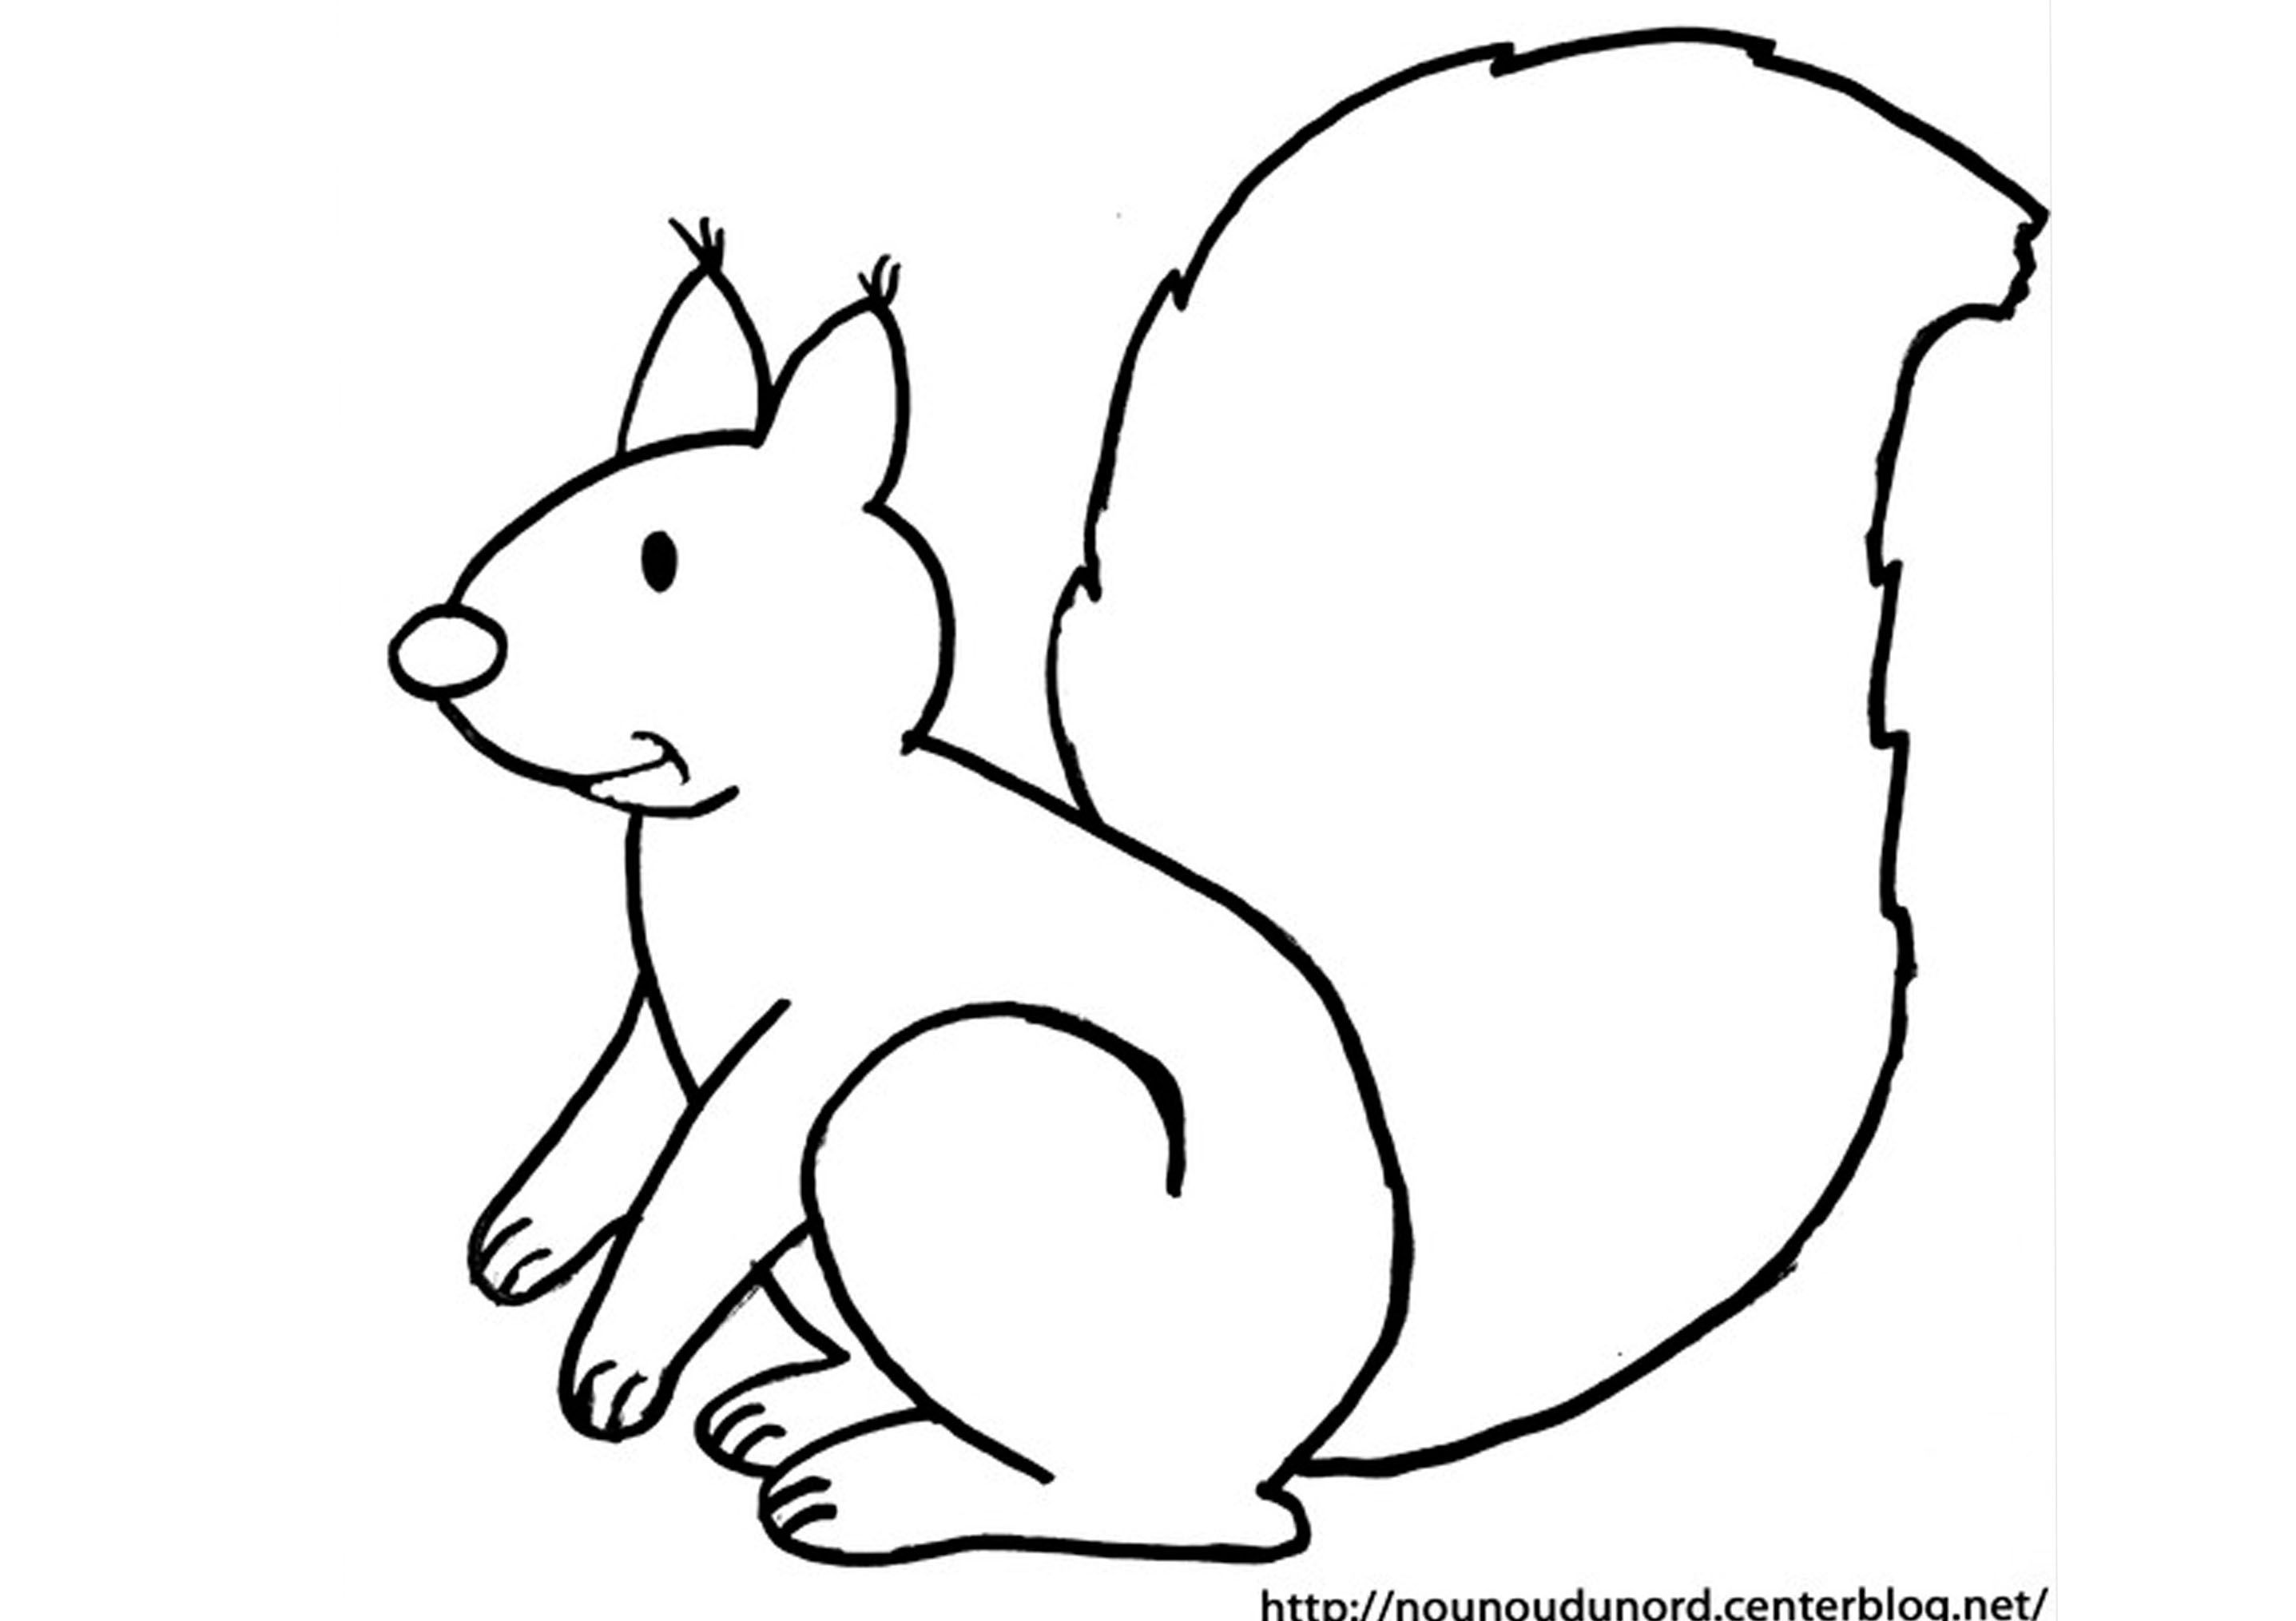 Comment dessiner ecureuil facilement